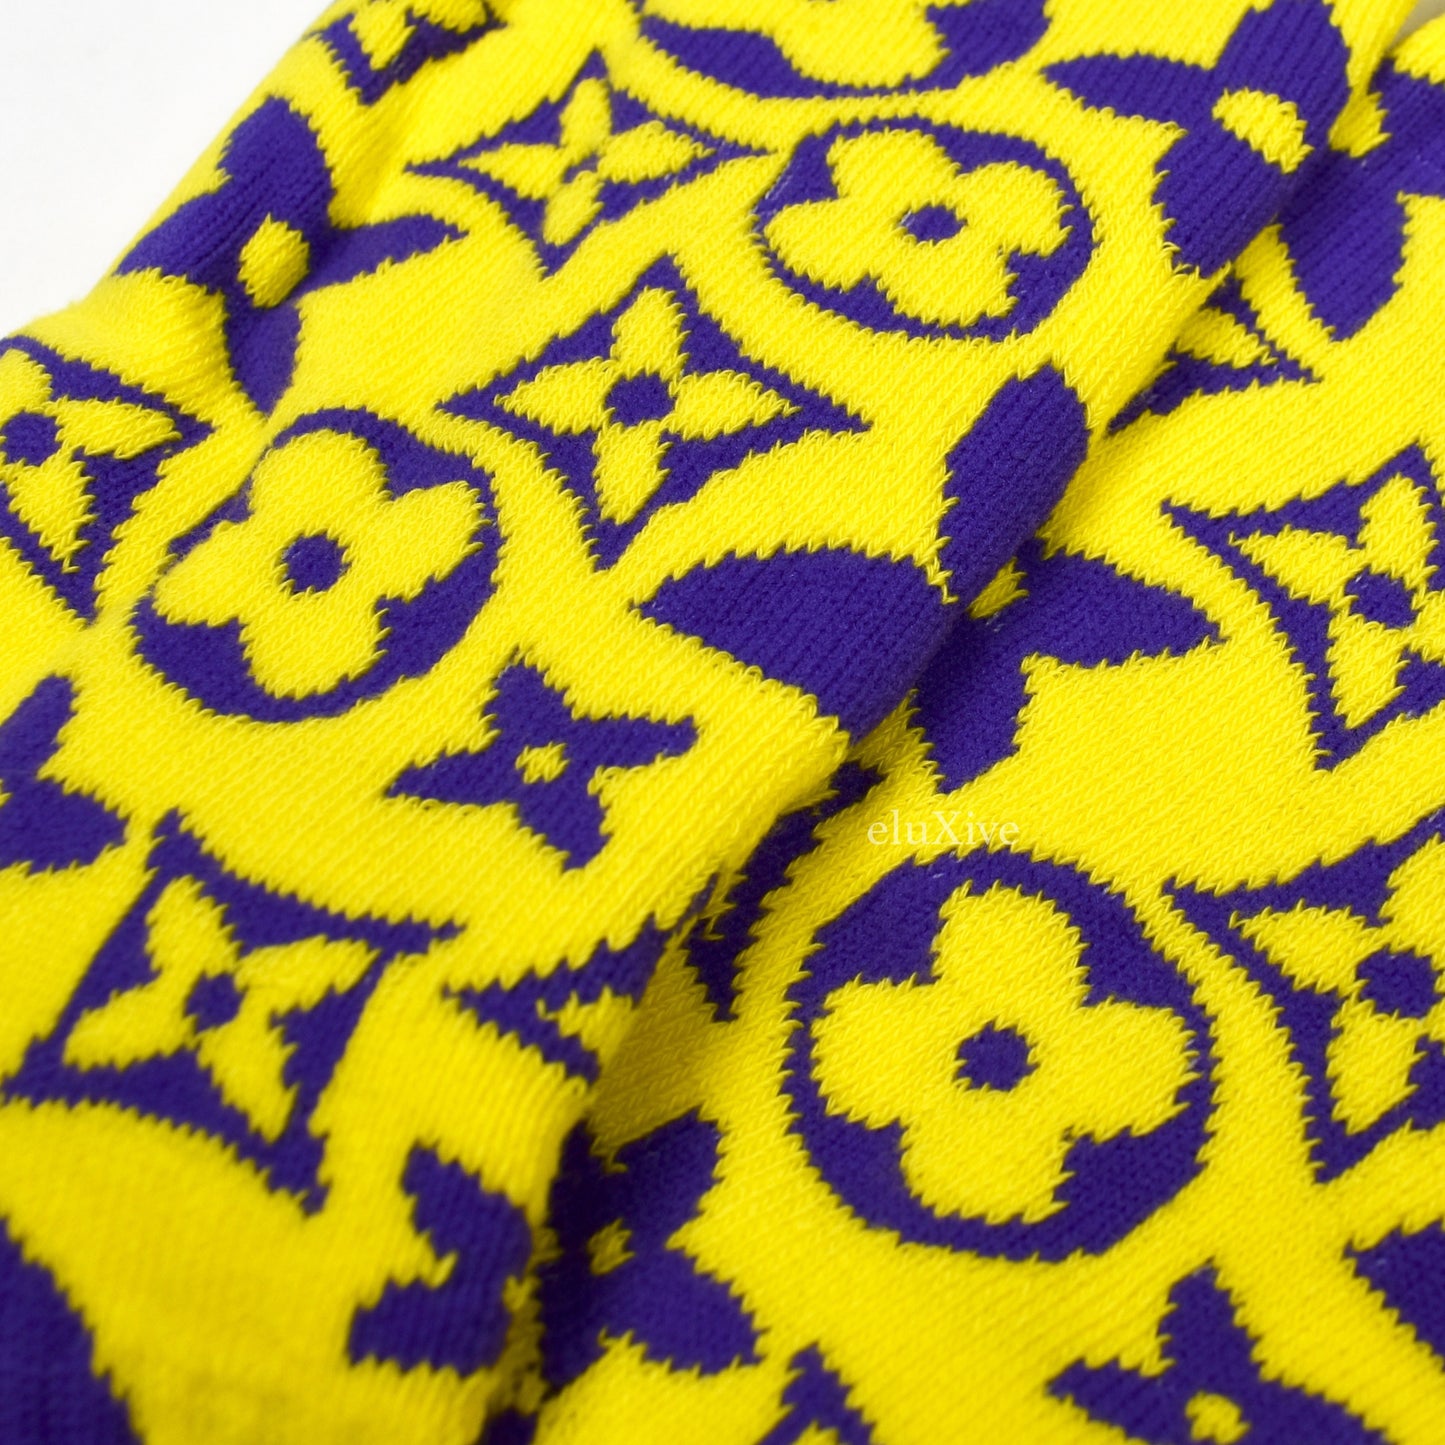 Imran Potato - Yellow/Purple 'LV’ Logo Knit Socks